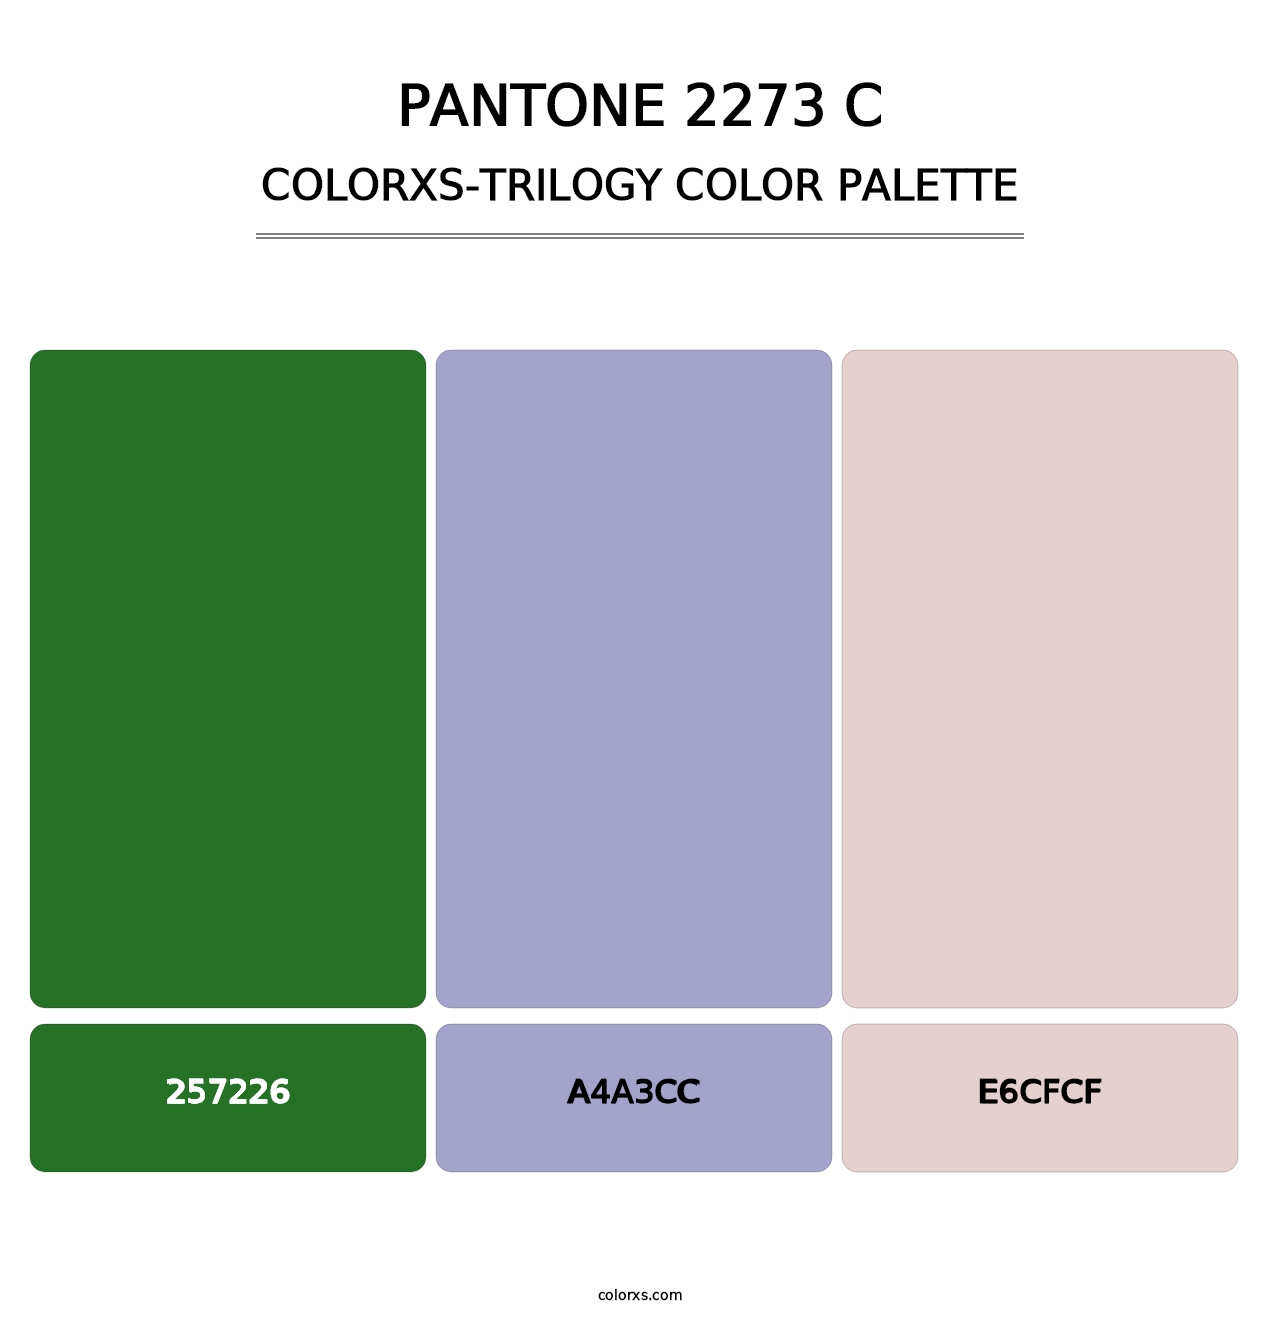 PANTONE 2273 C - Colorxs Trilogy Palette